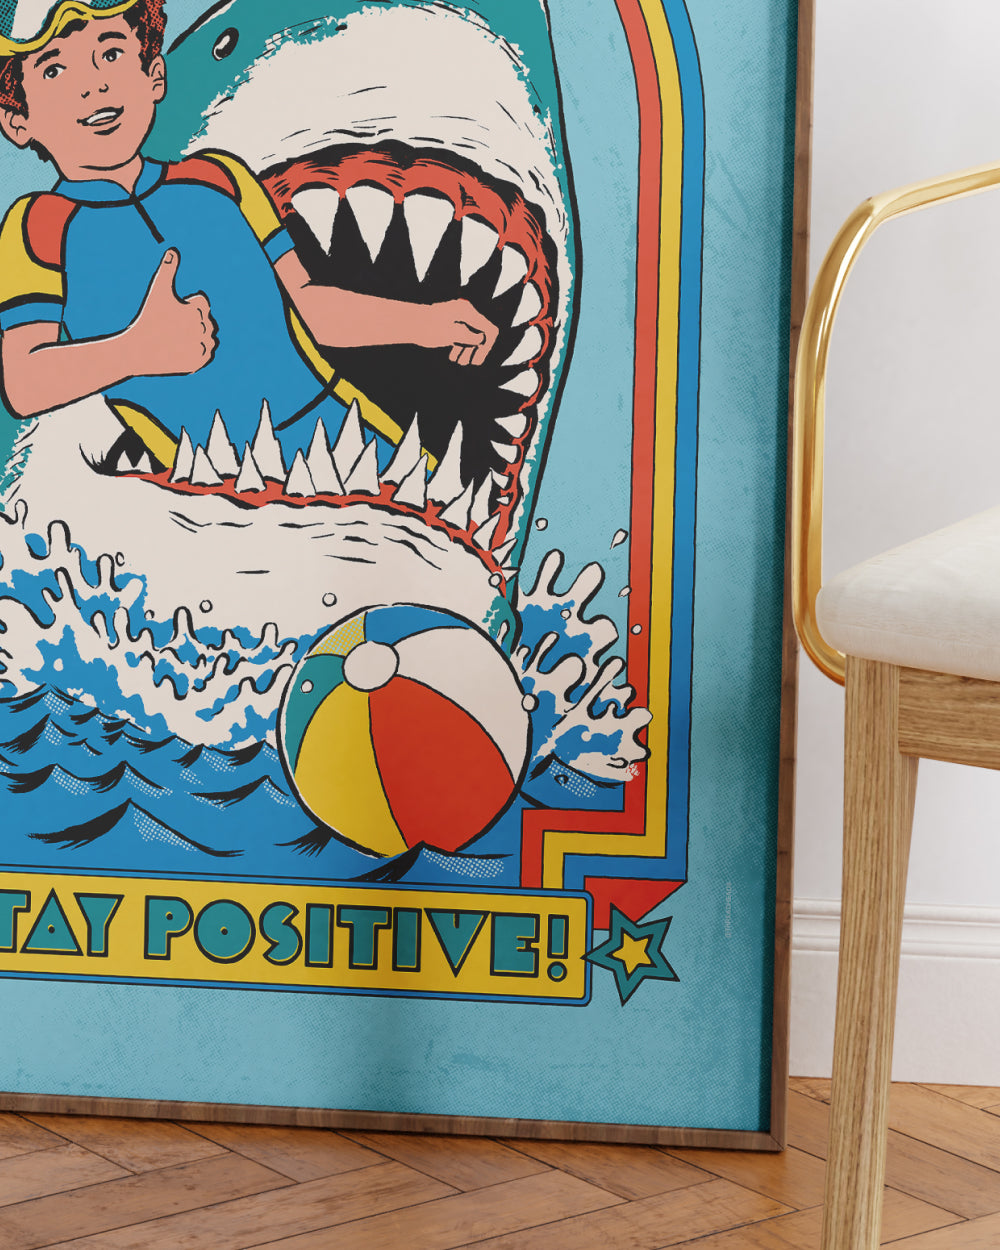 Stay Positive Art Print Online Australia #colour_blue